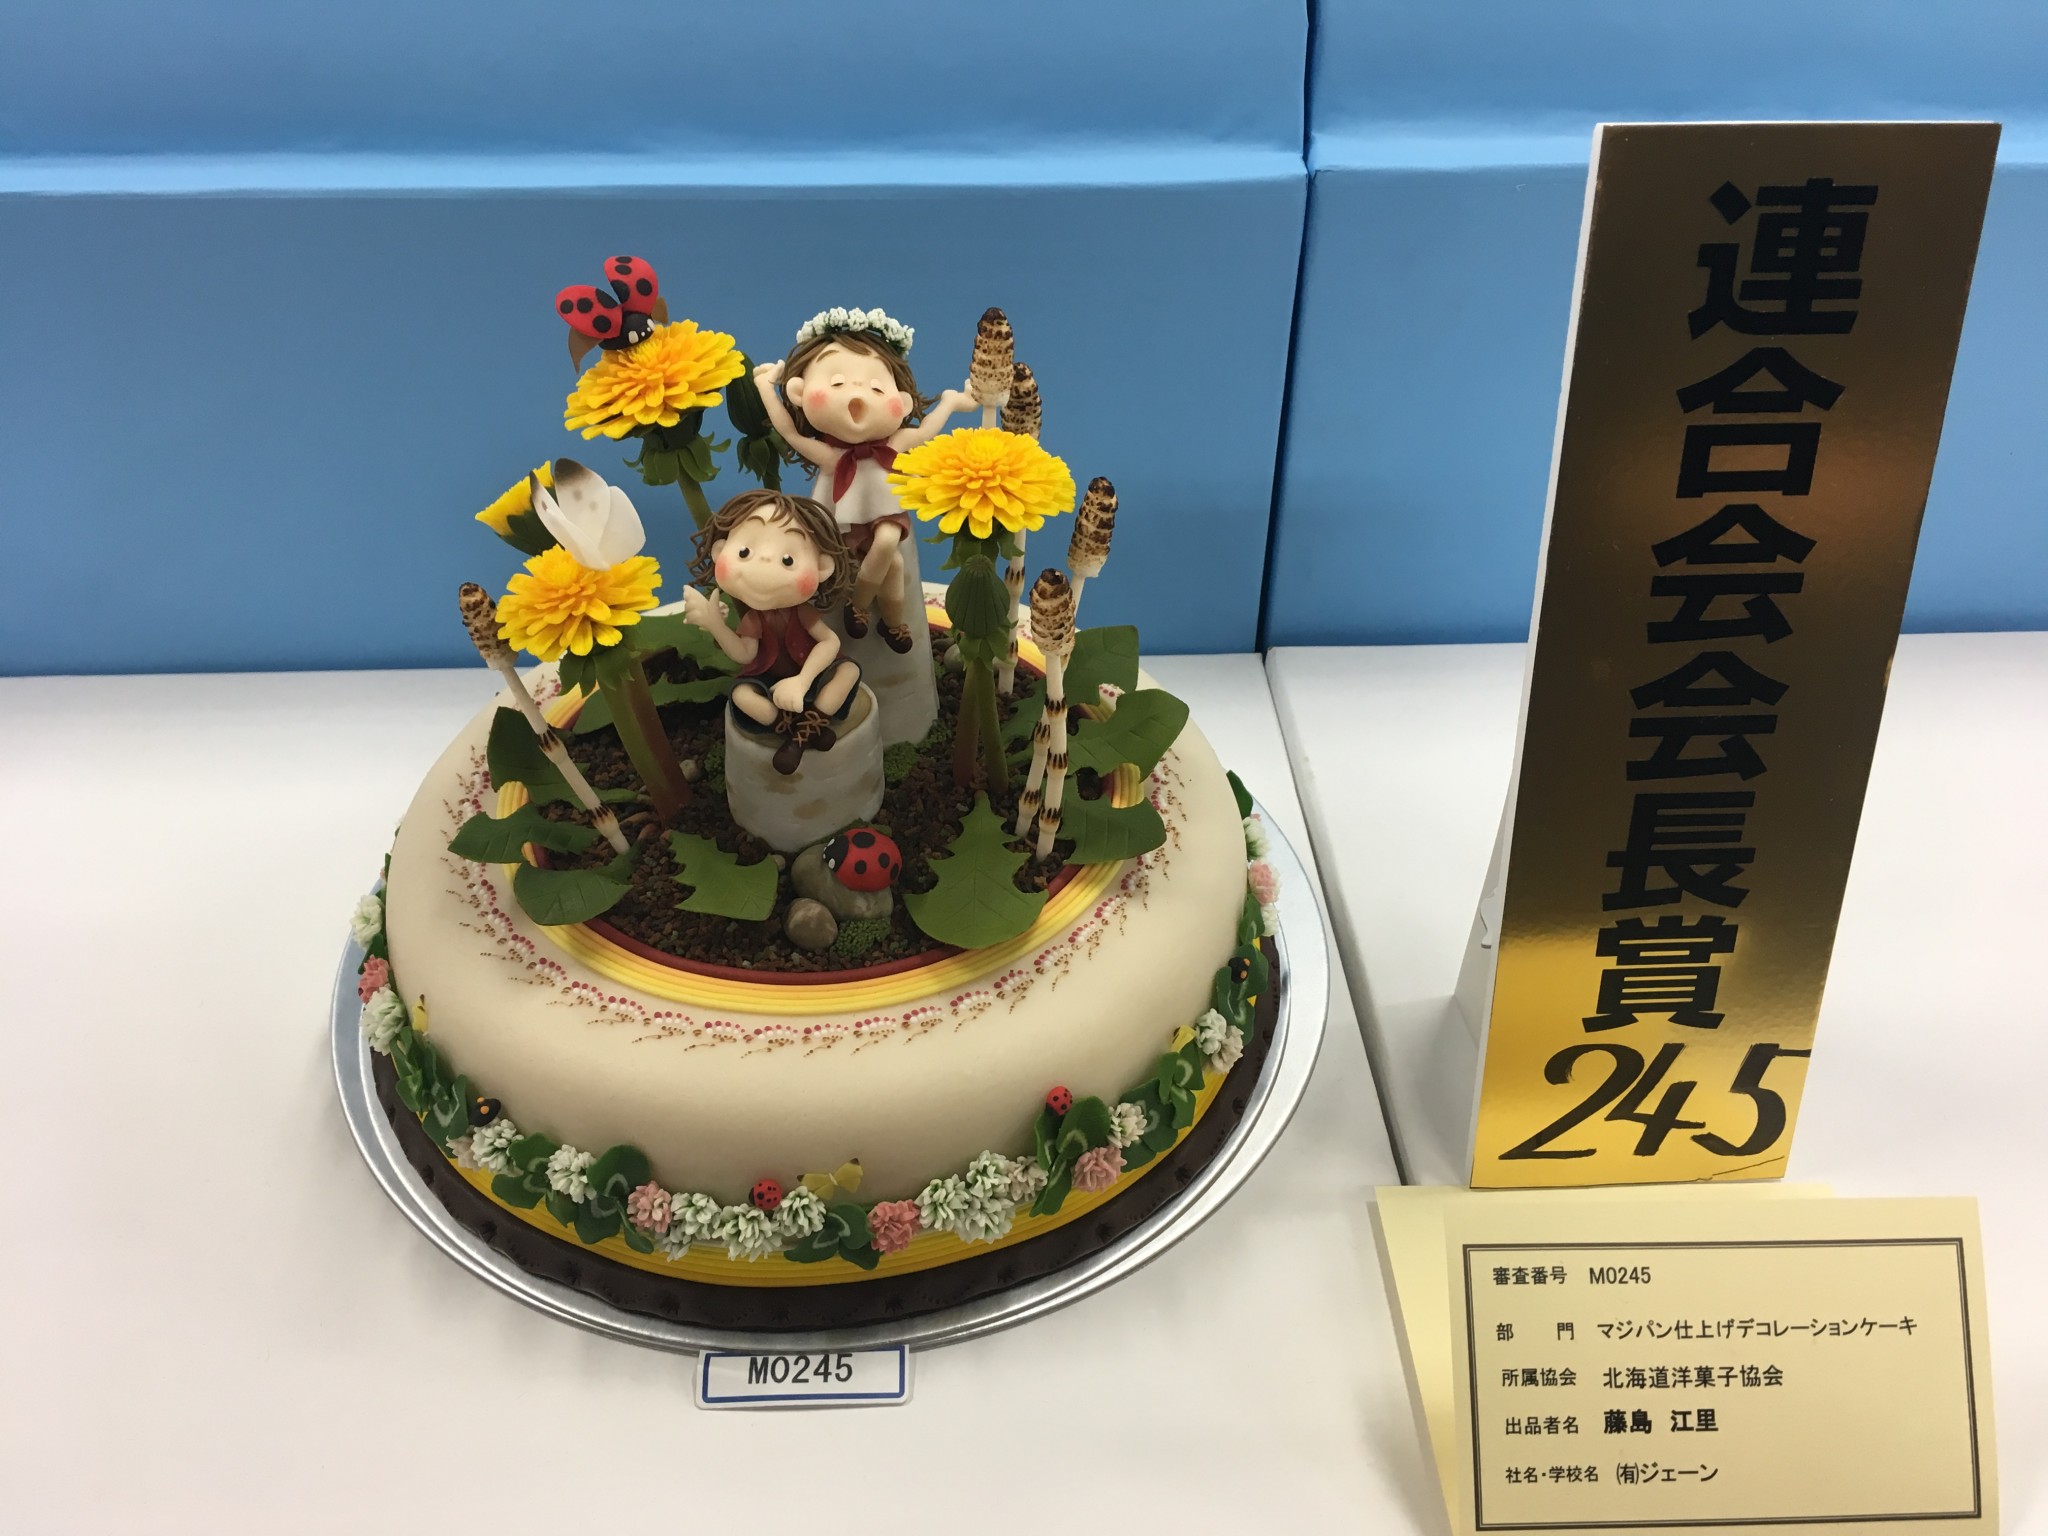 パティシエ科 卒業生が快挙 国内最大の洋菓子コンテストで日本一に 札幌ベルエポック製菓調理ウェディング専門学校 パティシエ シェフ カフェ ウェディング業界のプロを目指す